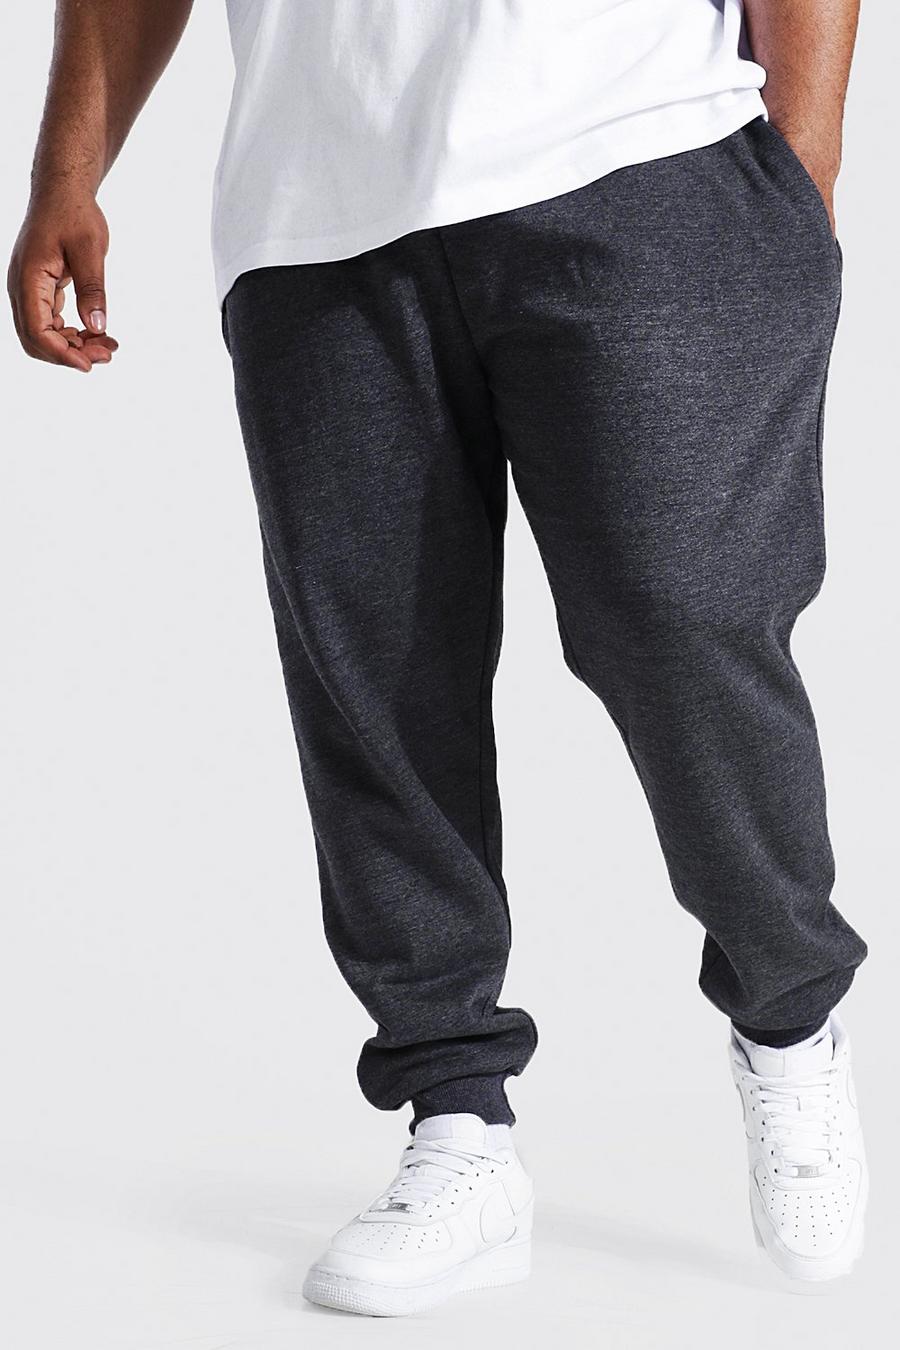 Pantalón deportivo Plus ajustado reciclado, Charcoal gris